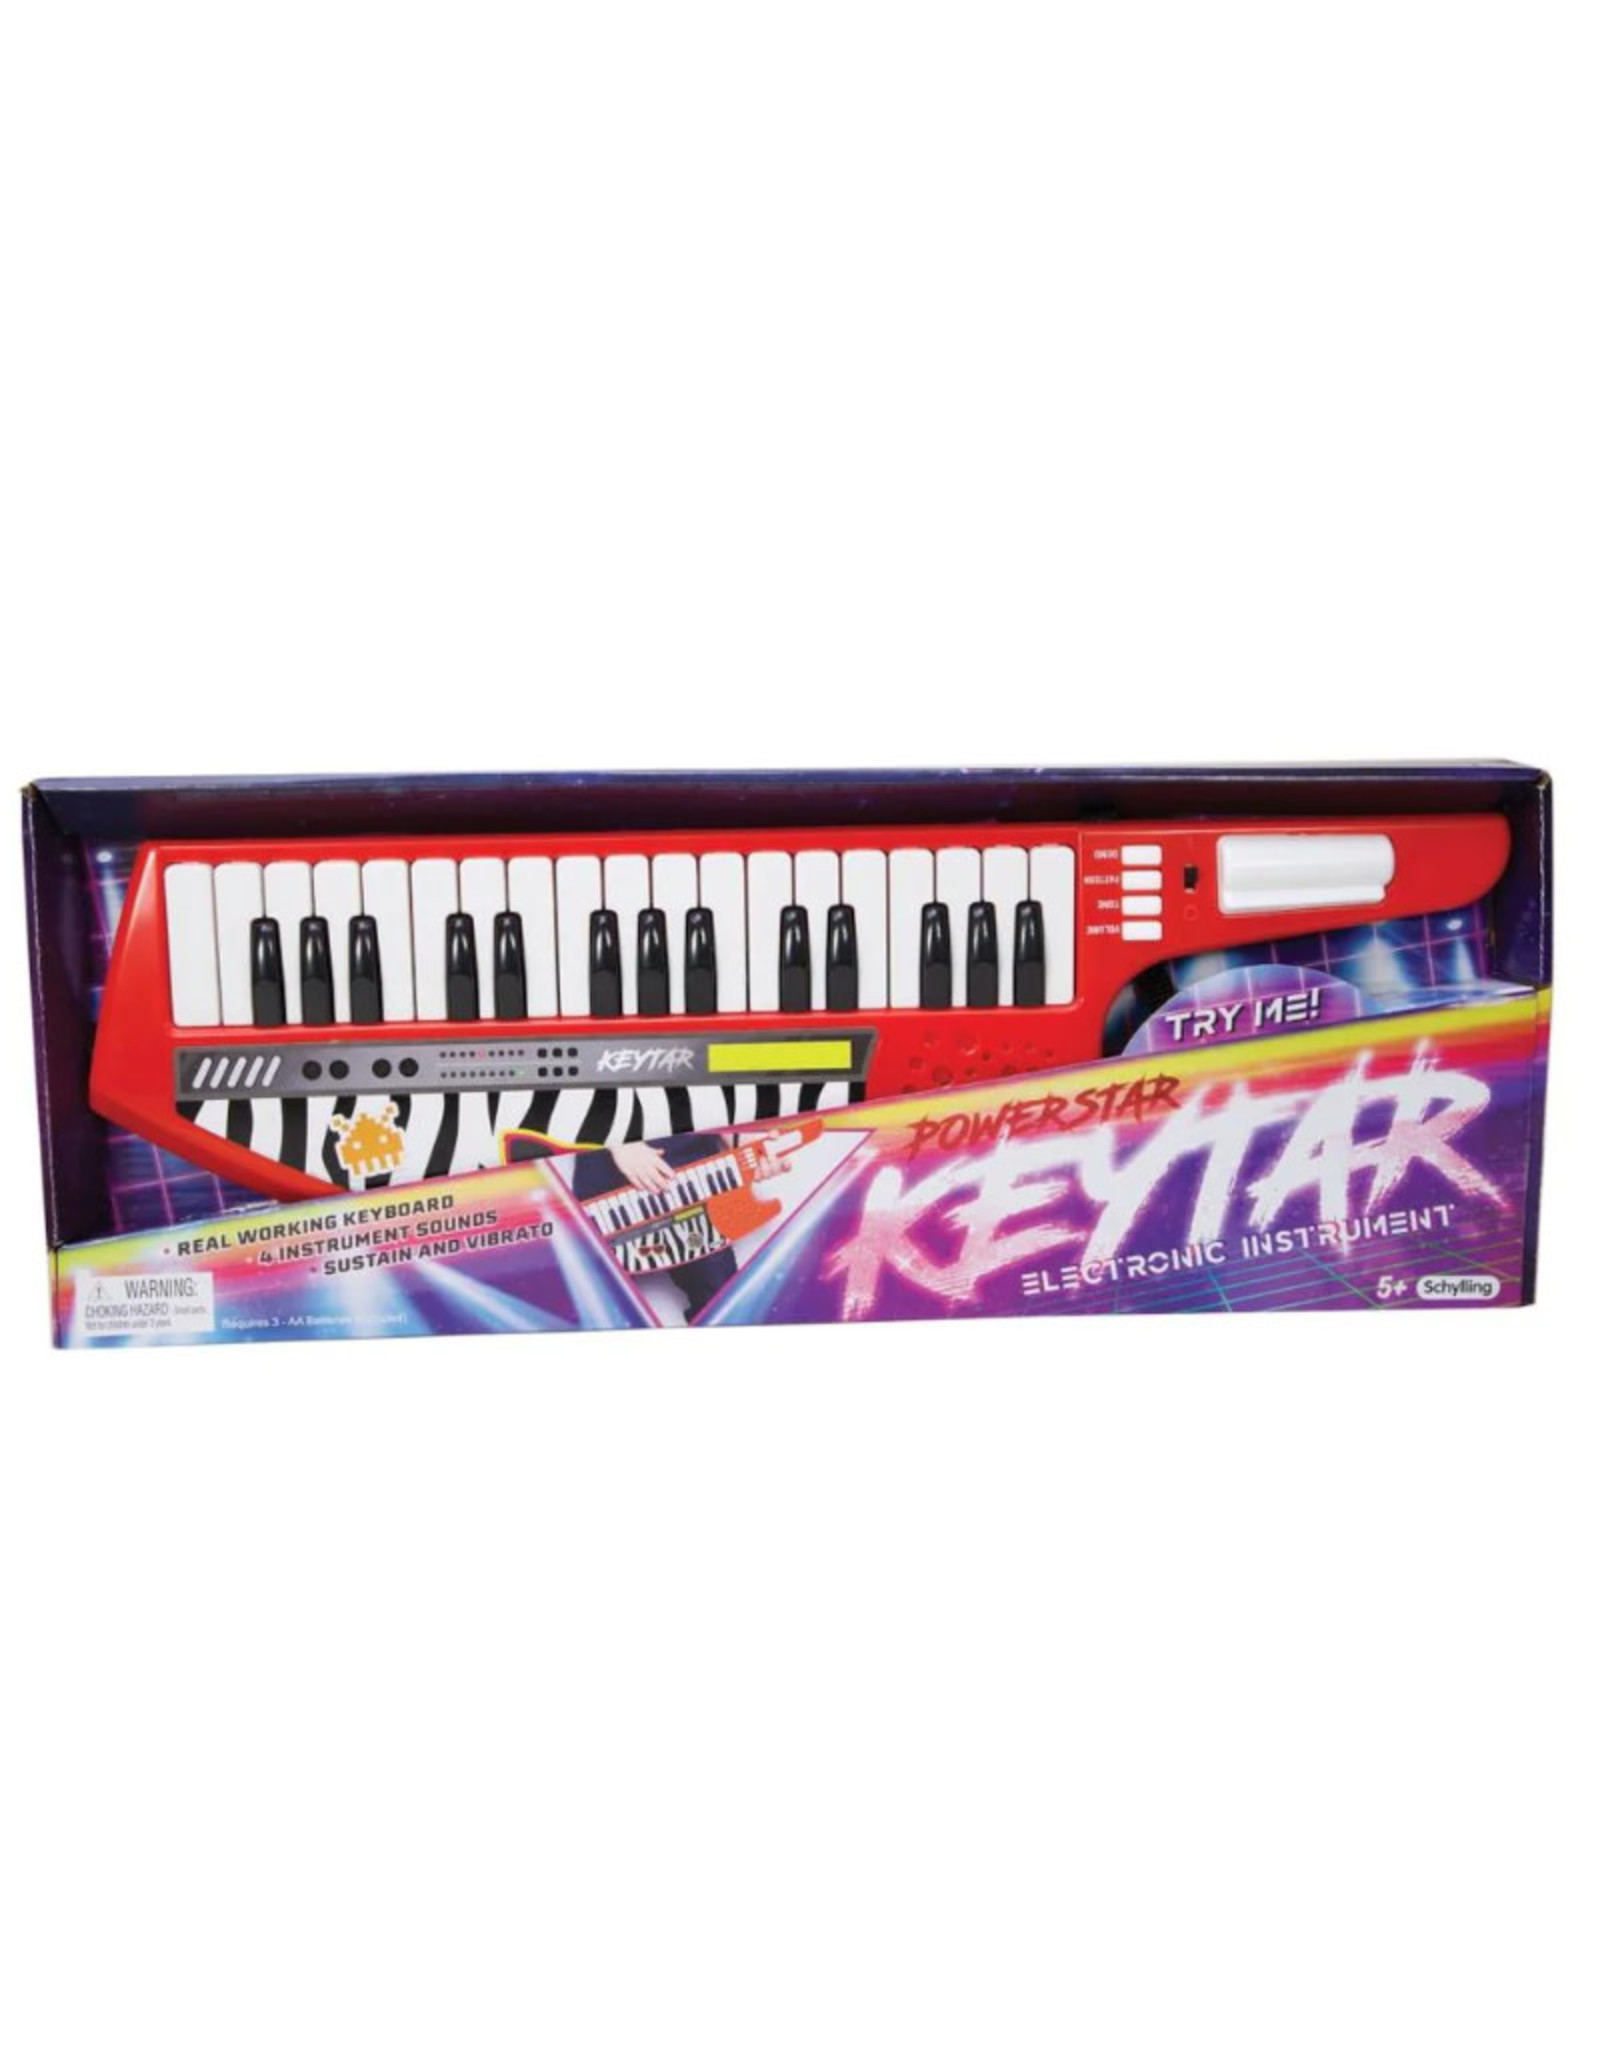 Schylling Power Star Keytar